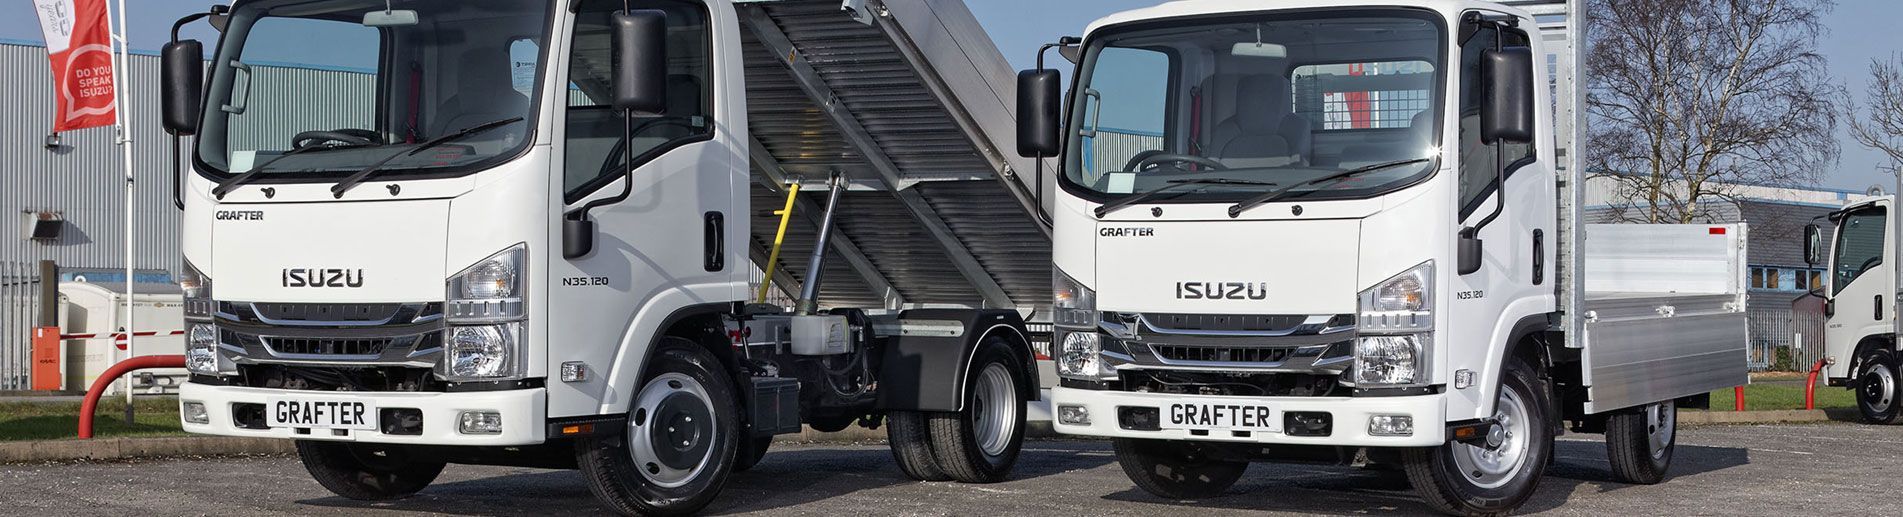 Isuzu Grafter Wins Light Truck of the Year Award